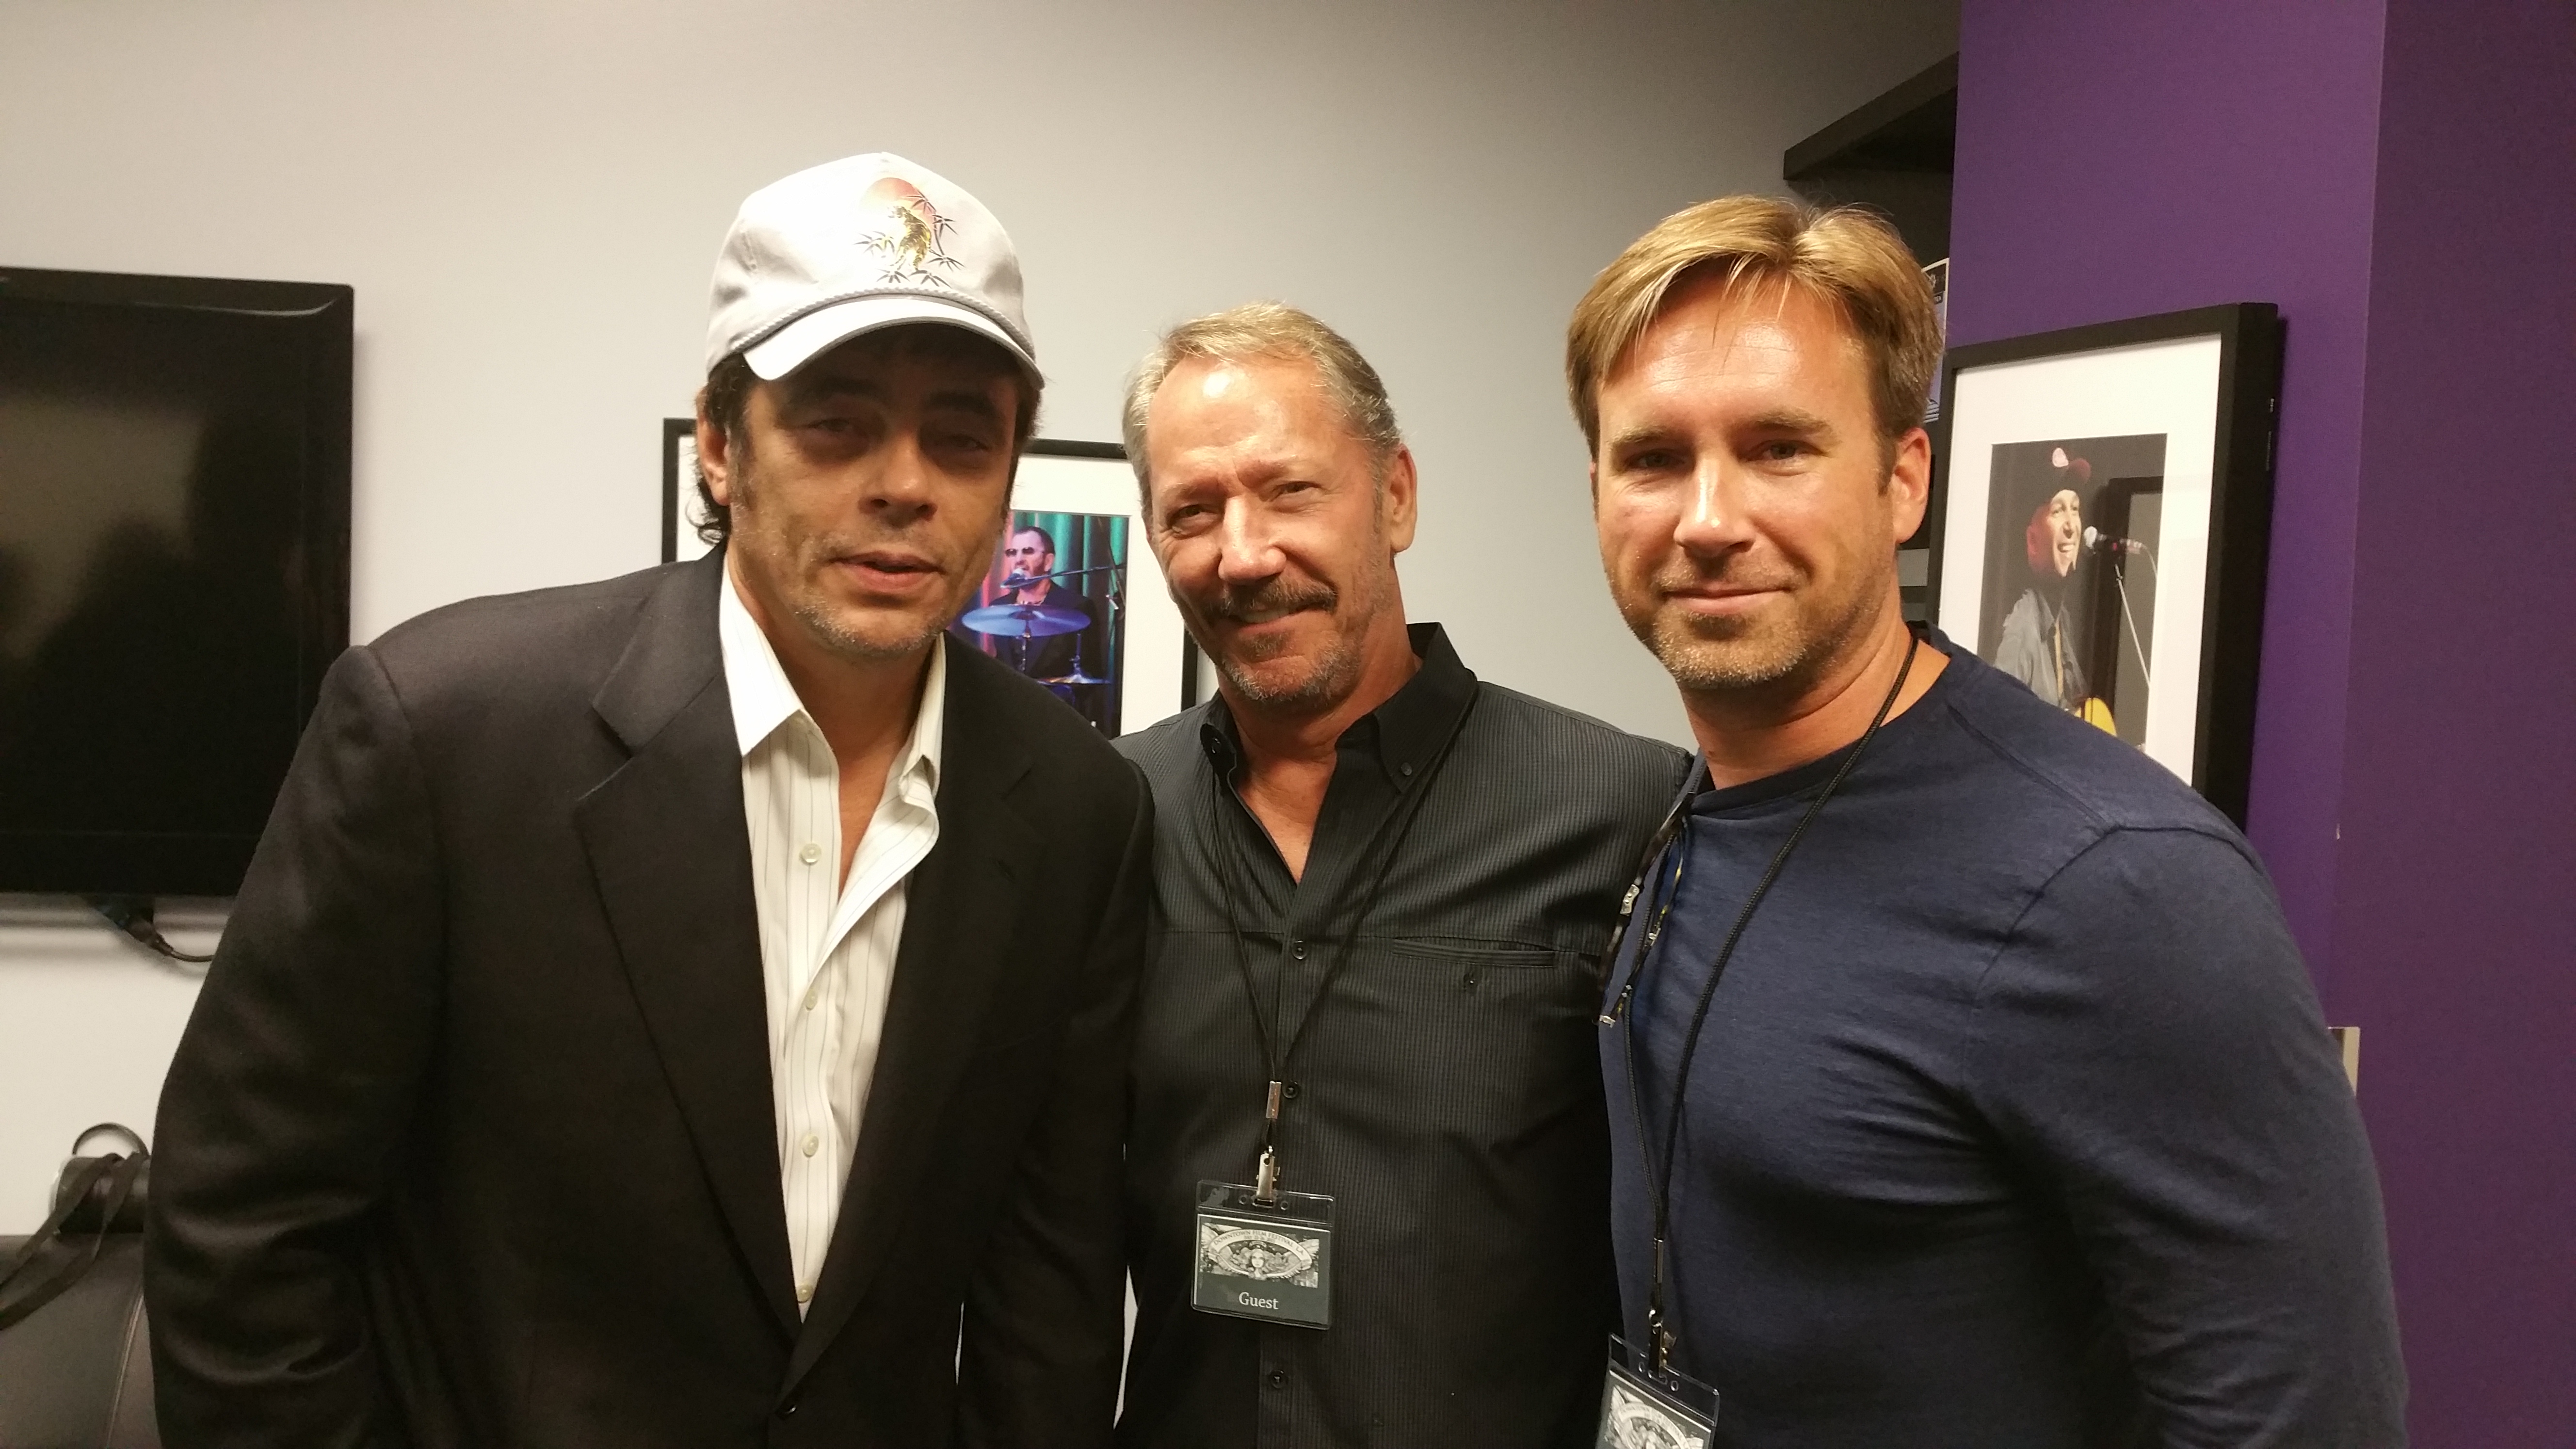 Benicio Del Toro, Chic Daniel and Michael Madison at the Downtown Film Festival Los Angeles 2015.